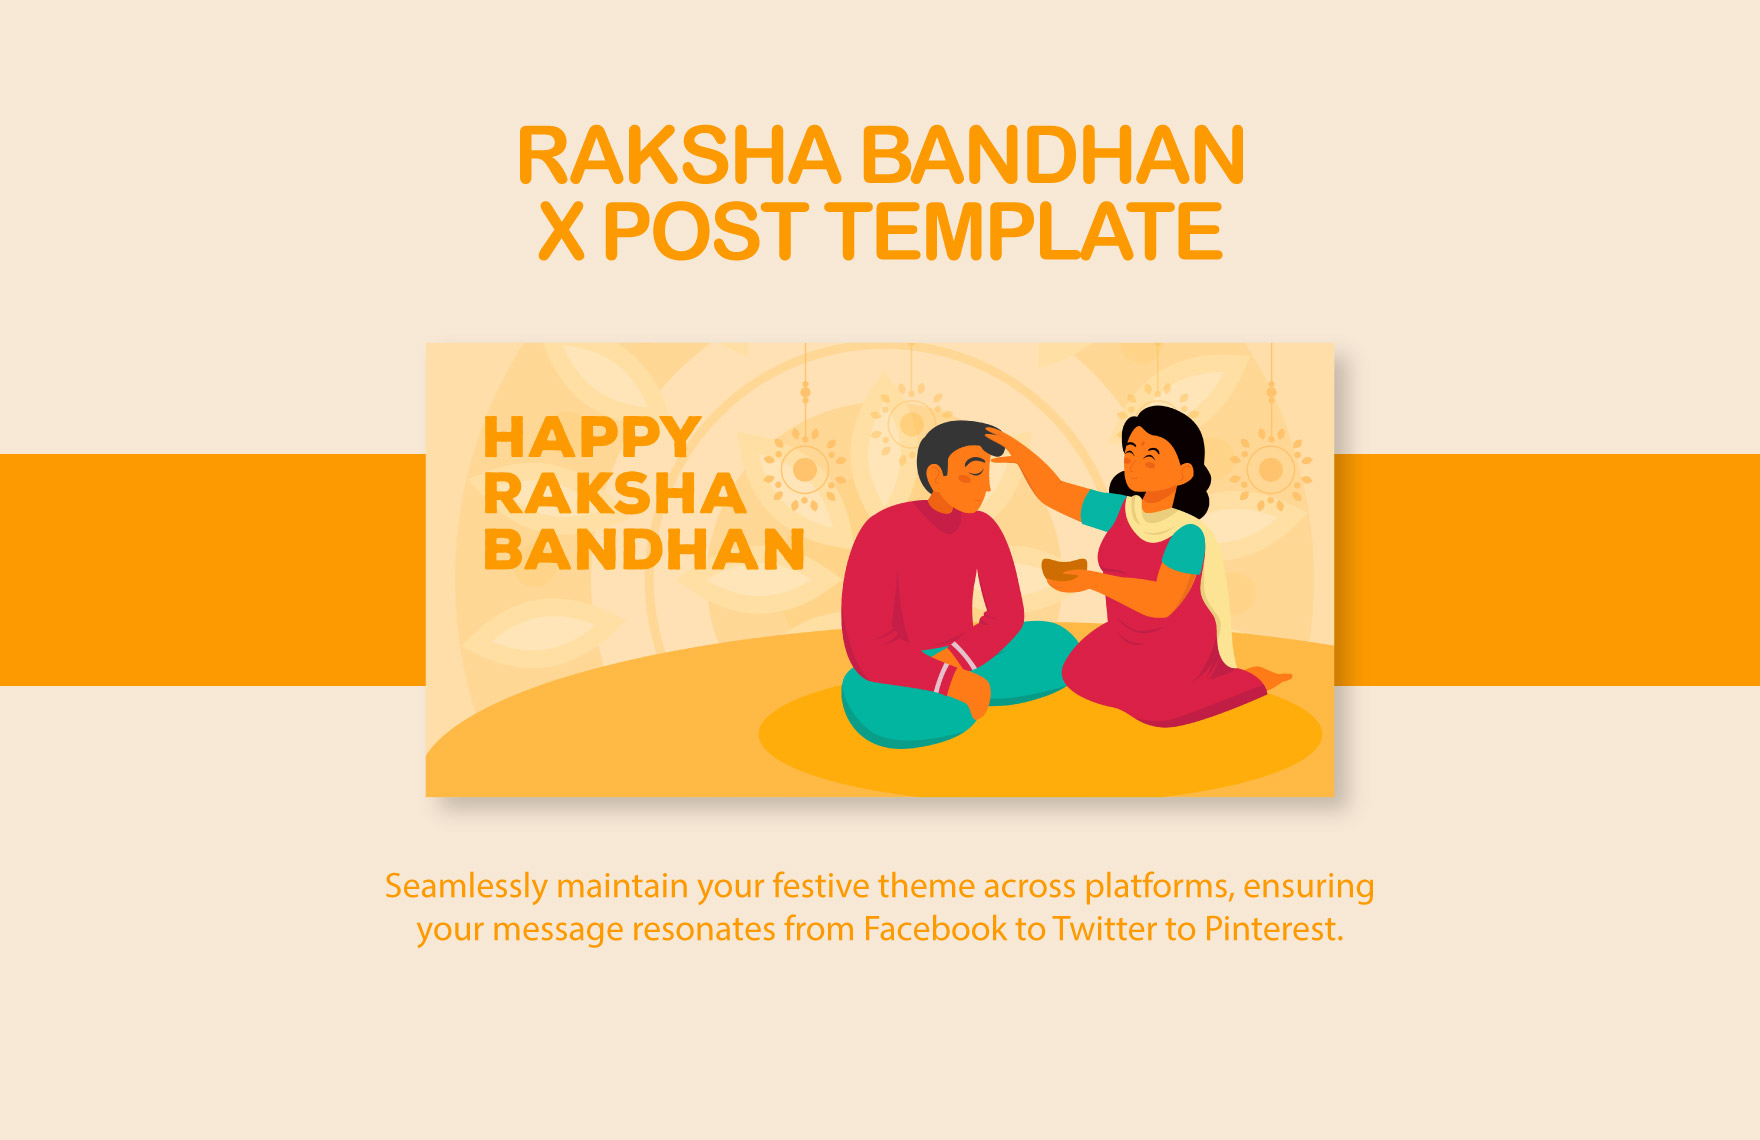 Happy Raksha Bandhan Vector Hd Images, Happy Raksha Bandhan Greeting With  Blue Red Gradient And Rakhi Elements, Happy, Raksha, Bandhan PNG Image For  Free Downlo… | Happy rakshabandhan, Raksha bandhan, Raksha bandhan